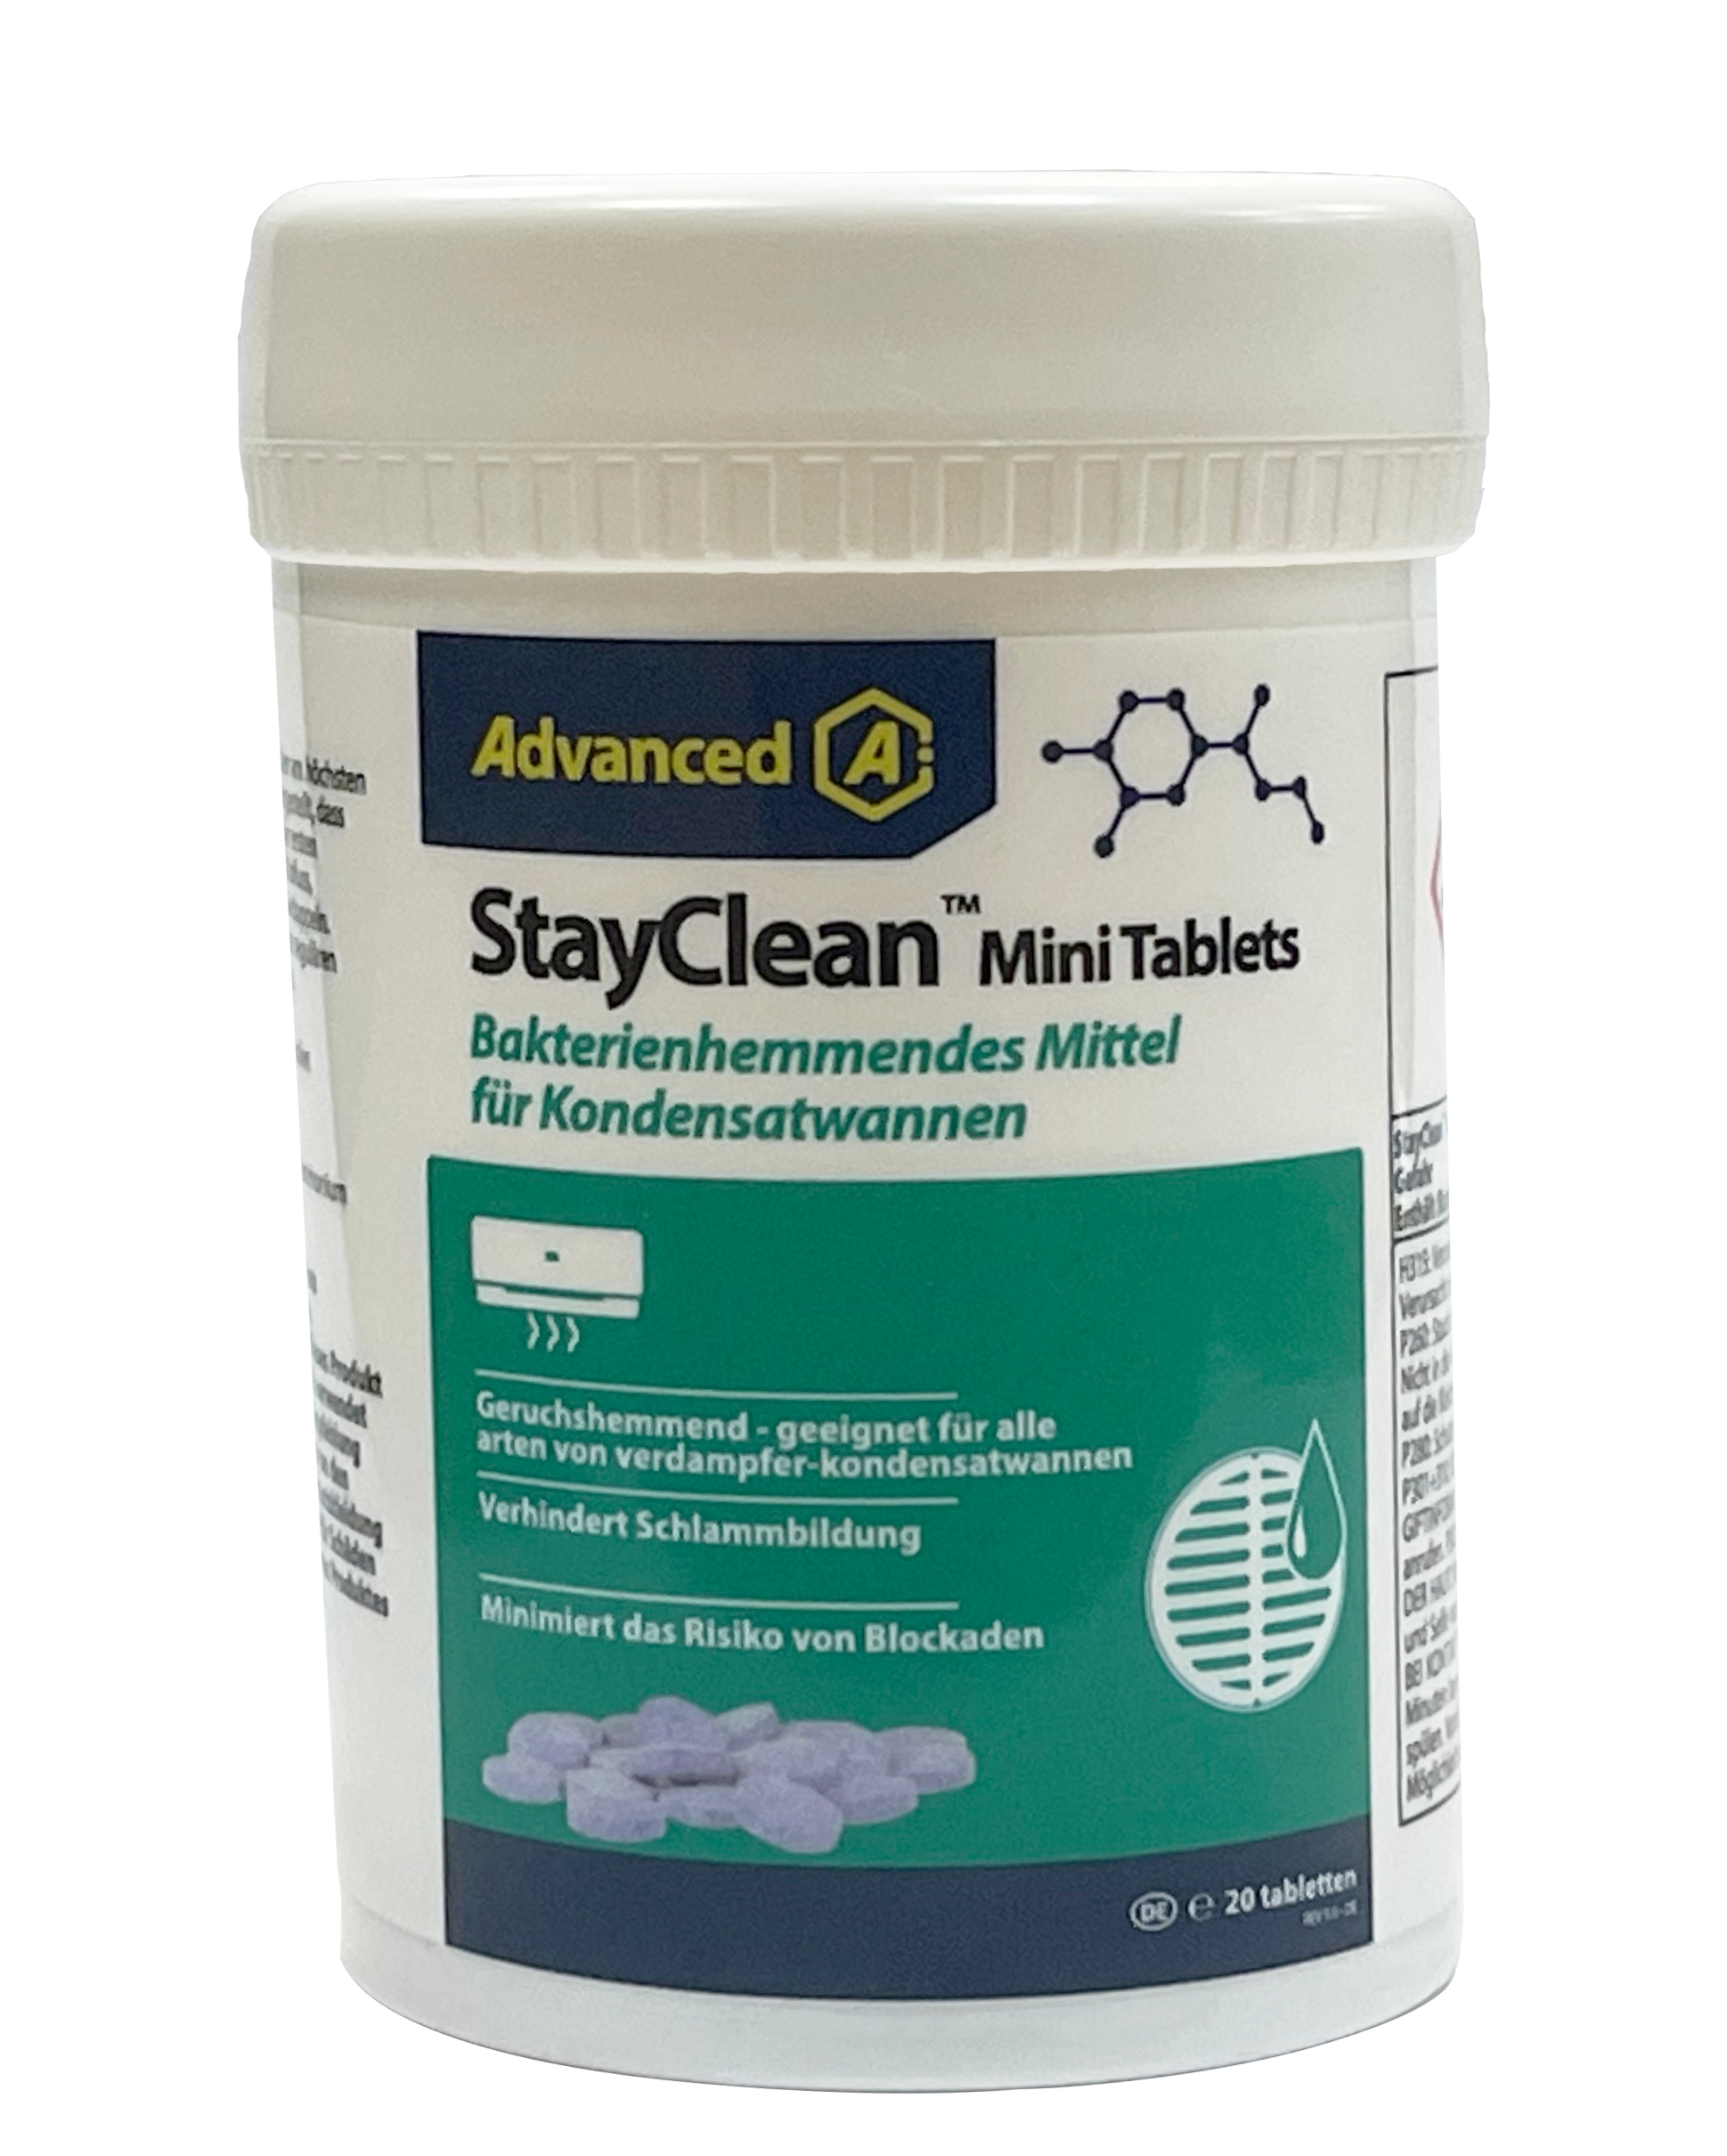 StayClean™ Mini Tablets Gegen Bakterien in der Kondensatwanne